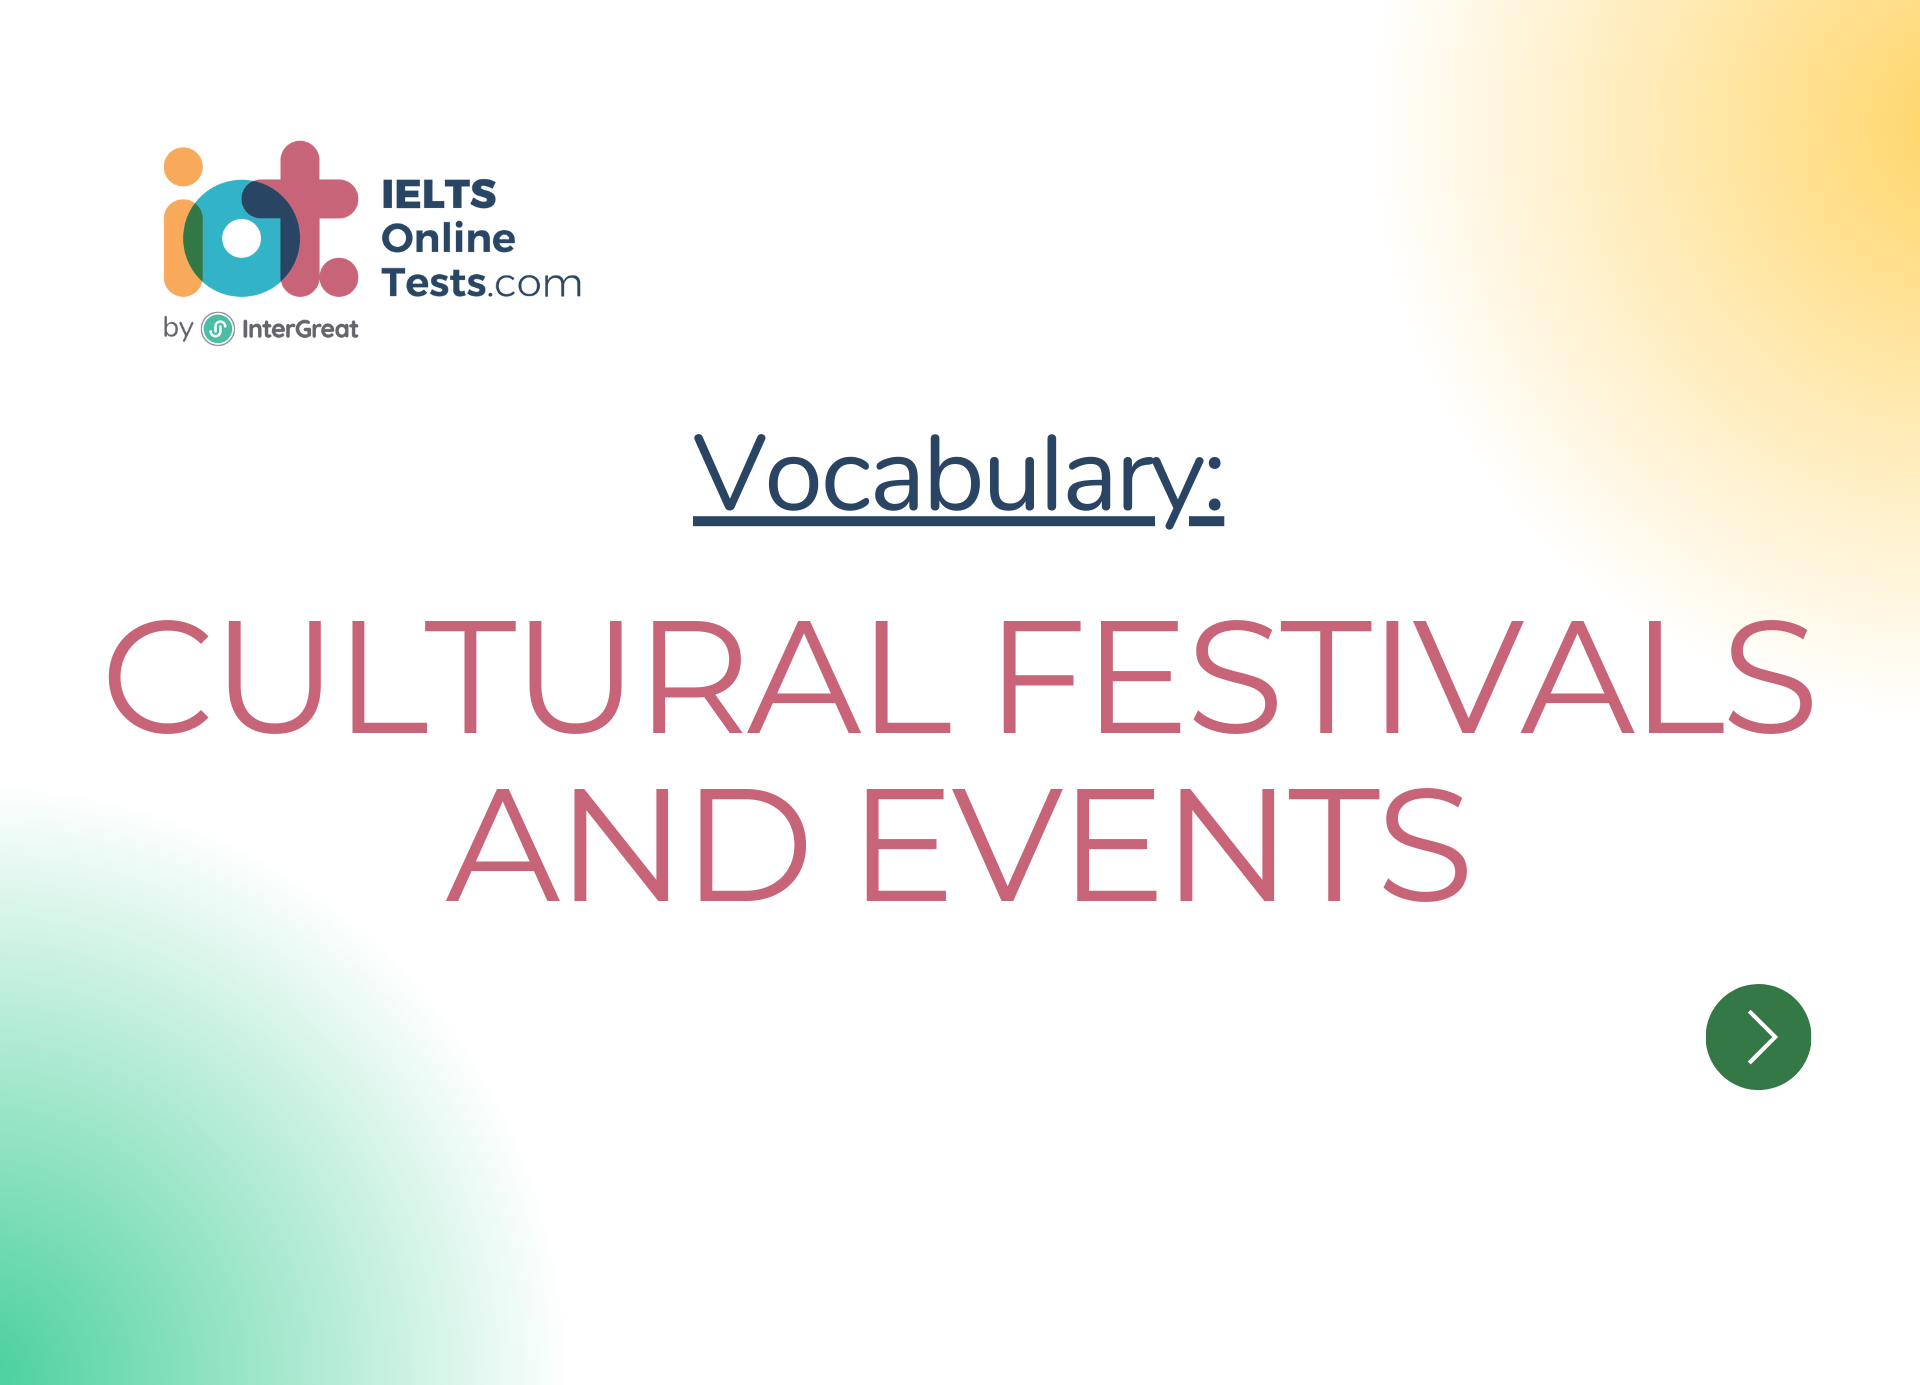 Lễ hội và sự kiện văn hóa (Cultural festivals and events)